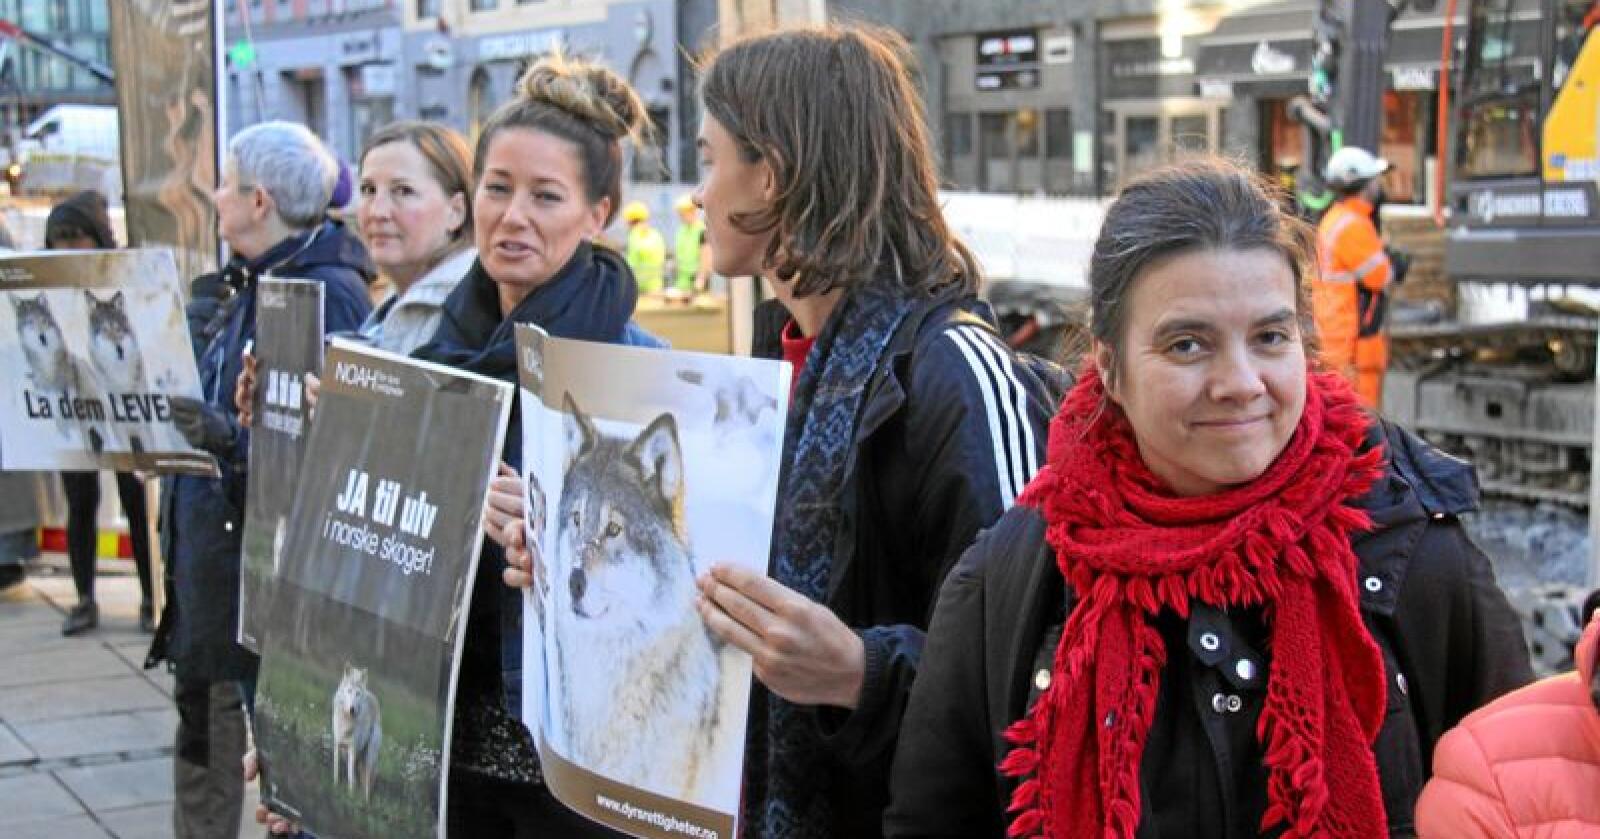 NOAH-leder Siri Martinsen fotografert utenfor Tinghuset i Oslo under en markering da organisasjonen WWF hadde trukket staten for retten i forbindelse med lisensjakt på ulv i fjor. Foto: Svein Egil Hatlevik